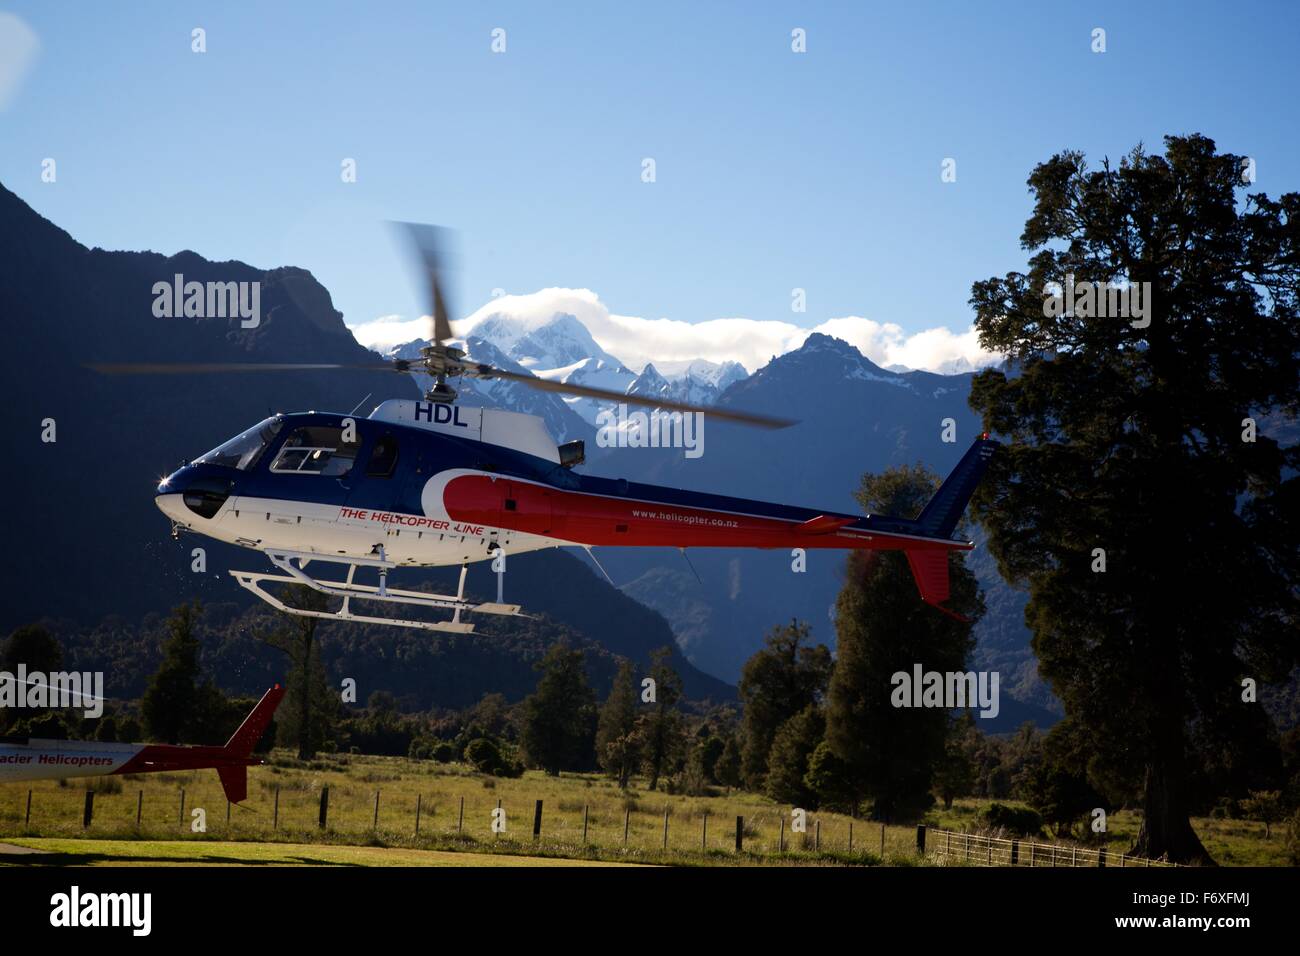 Aufnahme im Jahr 2013 eines Hubschraubers, Abfahrt um Touristen nehmen am Fox-Gletscher in Neuseeland zu wandern. Ich nahm dieses Foto vor dem Flug dort mich mit einer Gruppe von Touristen. Stockfoto